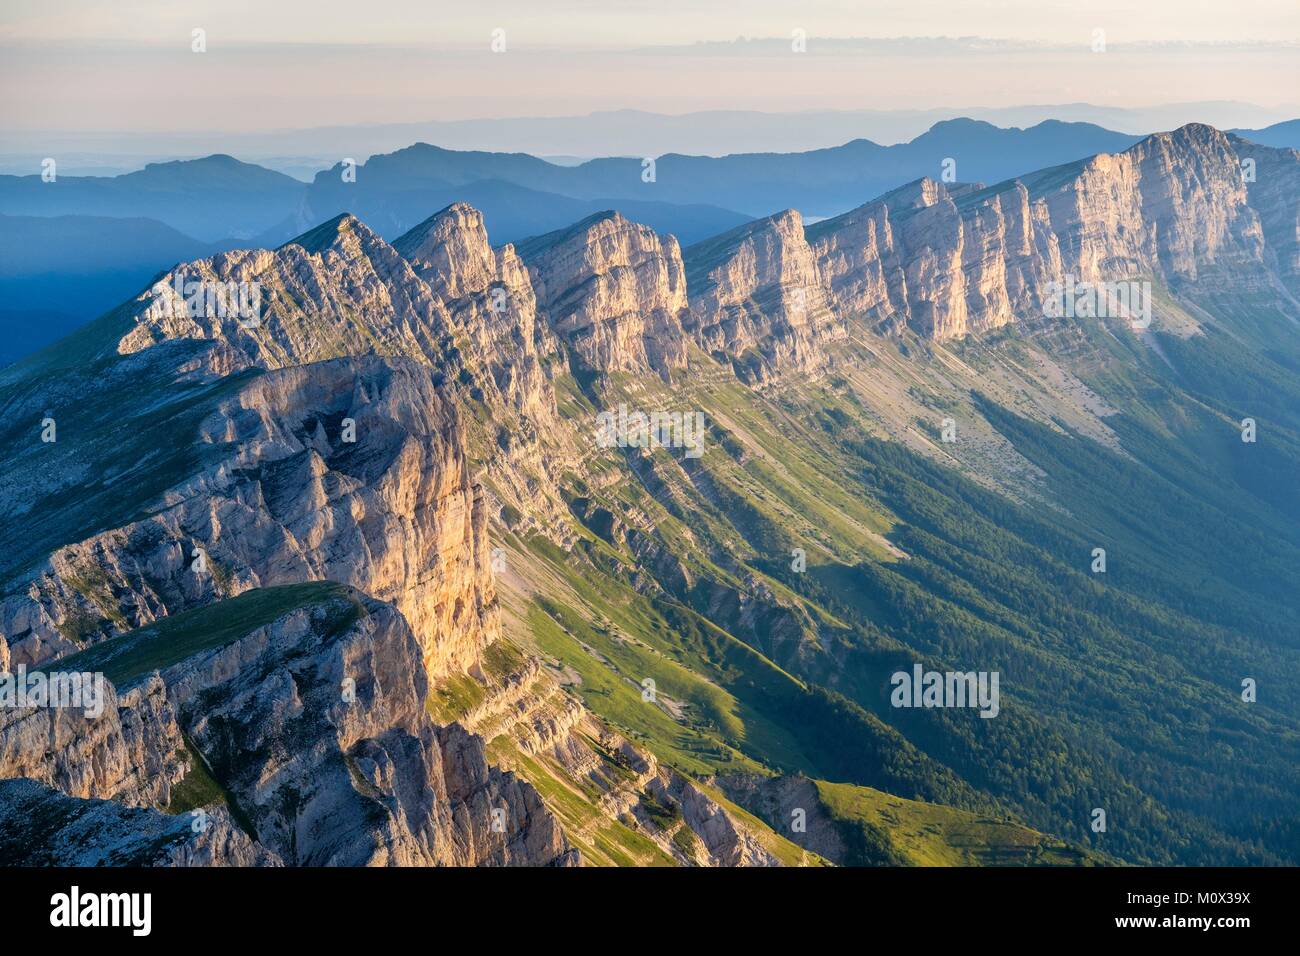 France,Isère,Parc Naturel Régional du Vercors, la réserve naturelle nationale des hauts plateaux du Vercors,le Vercors vu du haut des crêtes de Grand Veymont (alt : 2341 m), point le plus élevé du massif du Vercors Banque D'Images